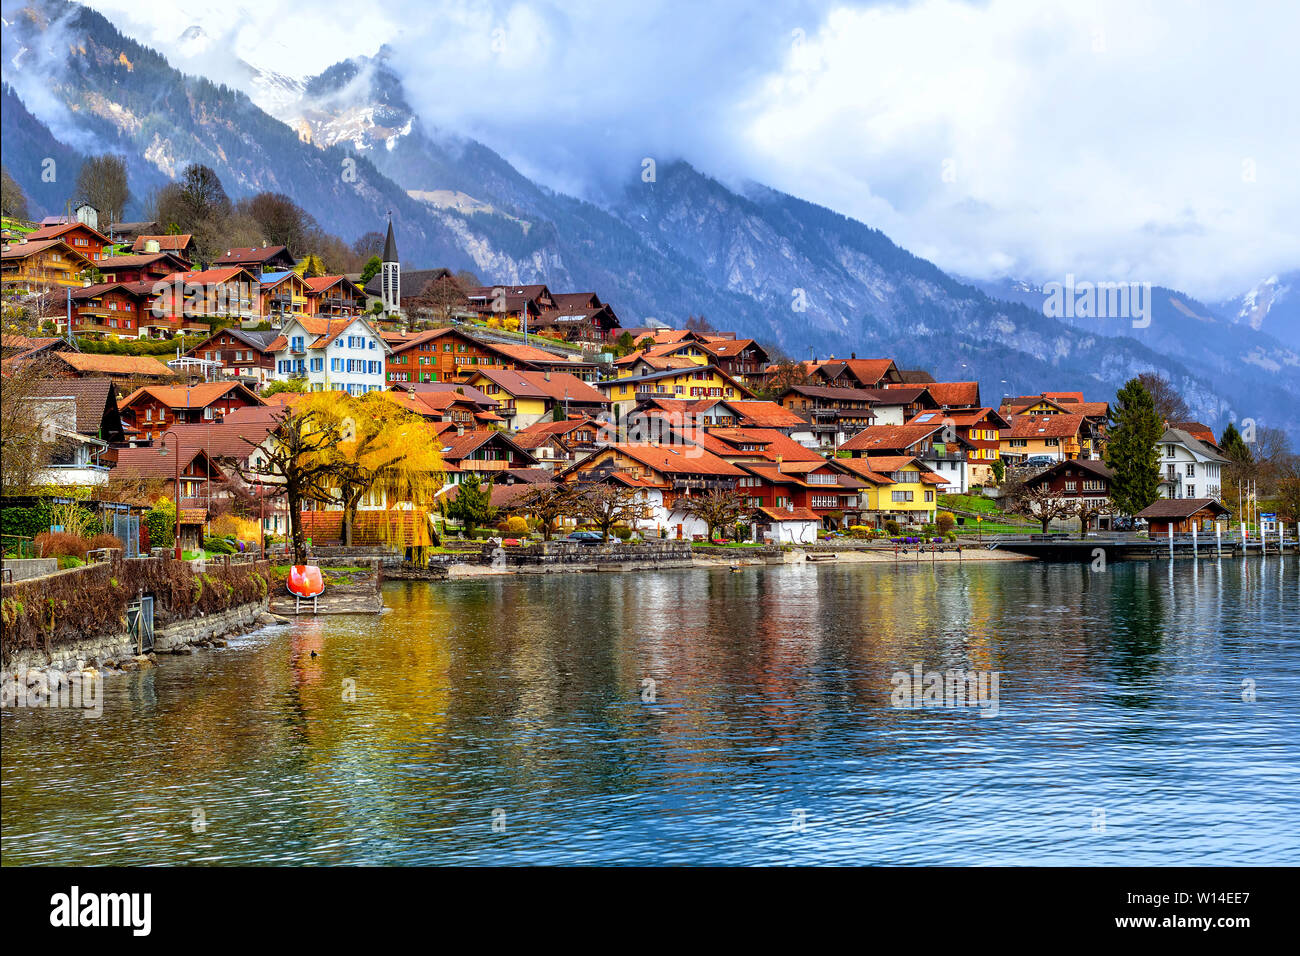 Altstadt von Oberried, Brienz, Interlaken und misty Alpen Berge im See widerspiegeln, Schweiz Stockfoto